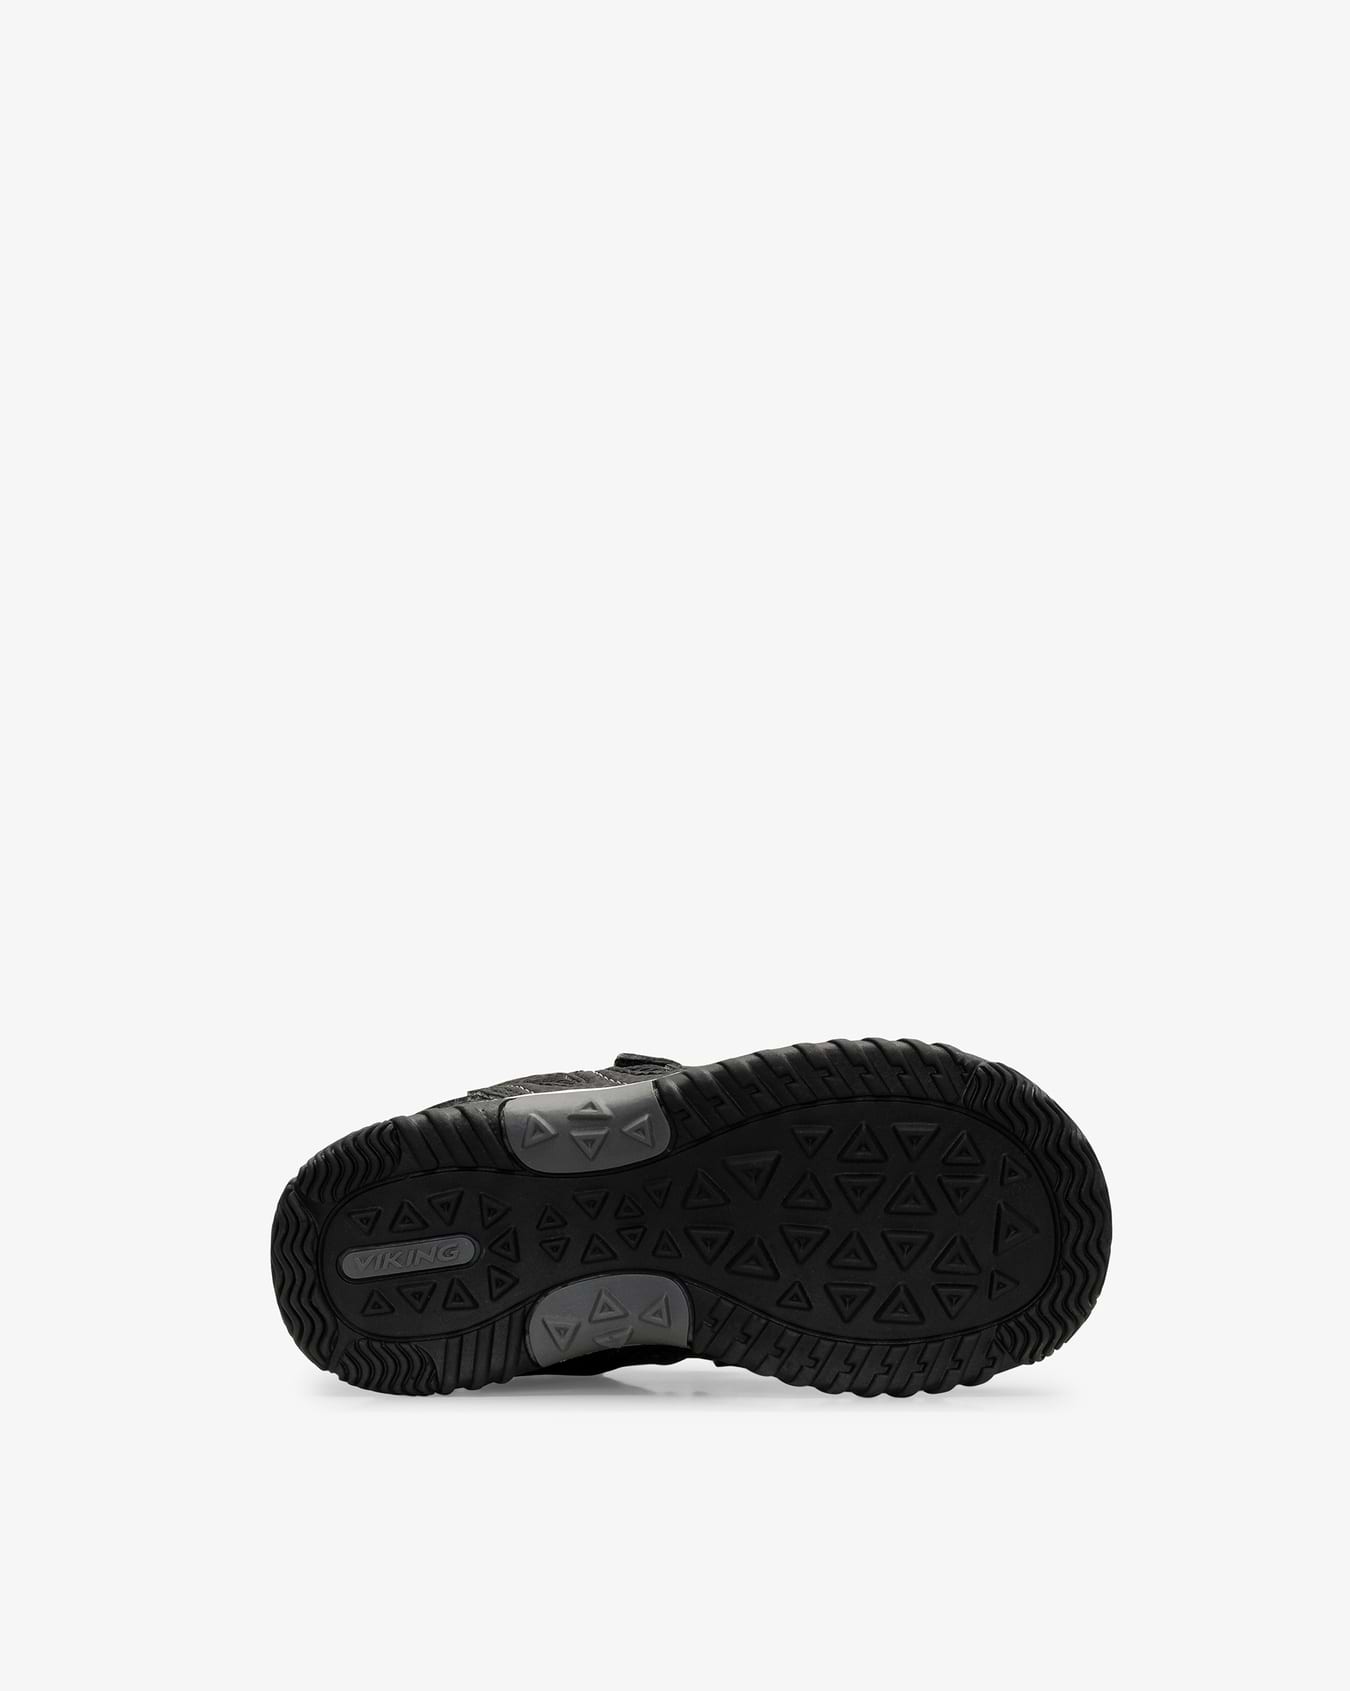 Cascade Mid III GTX Black Sneaker